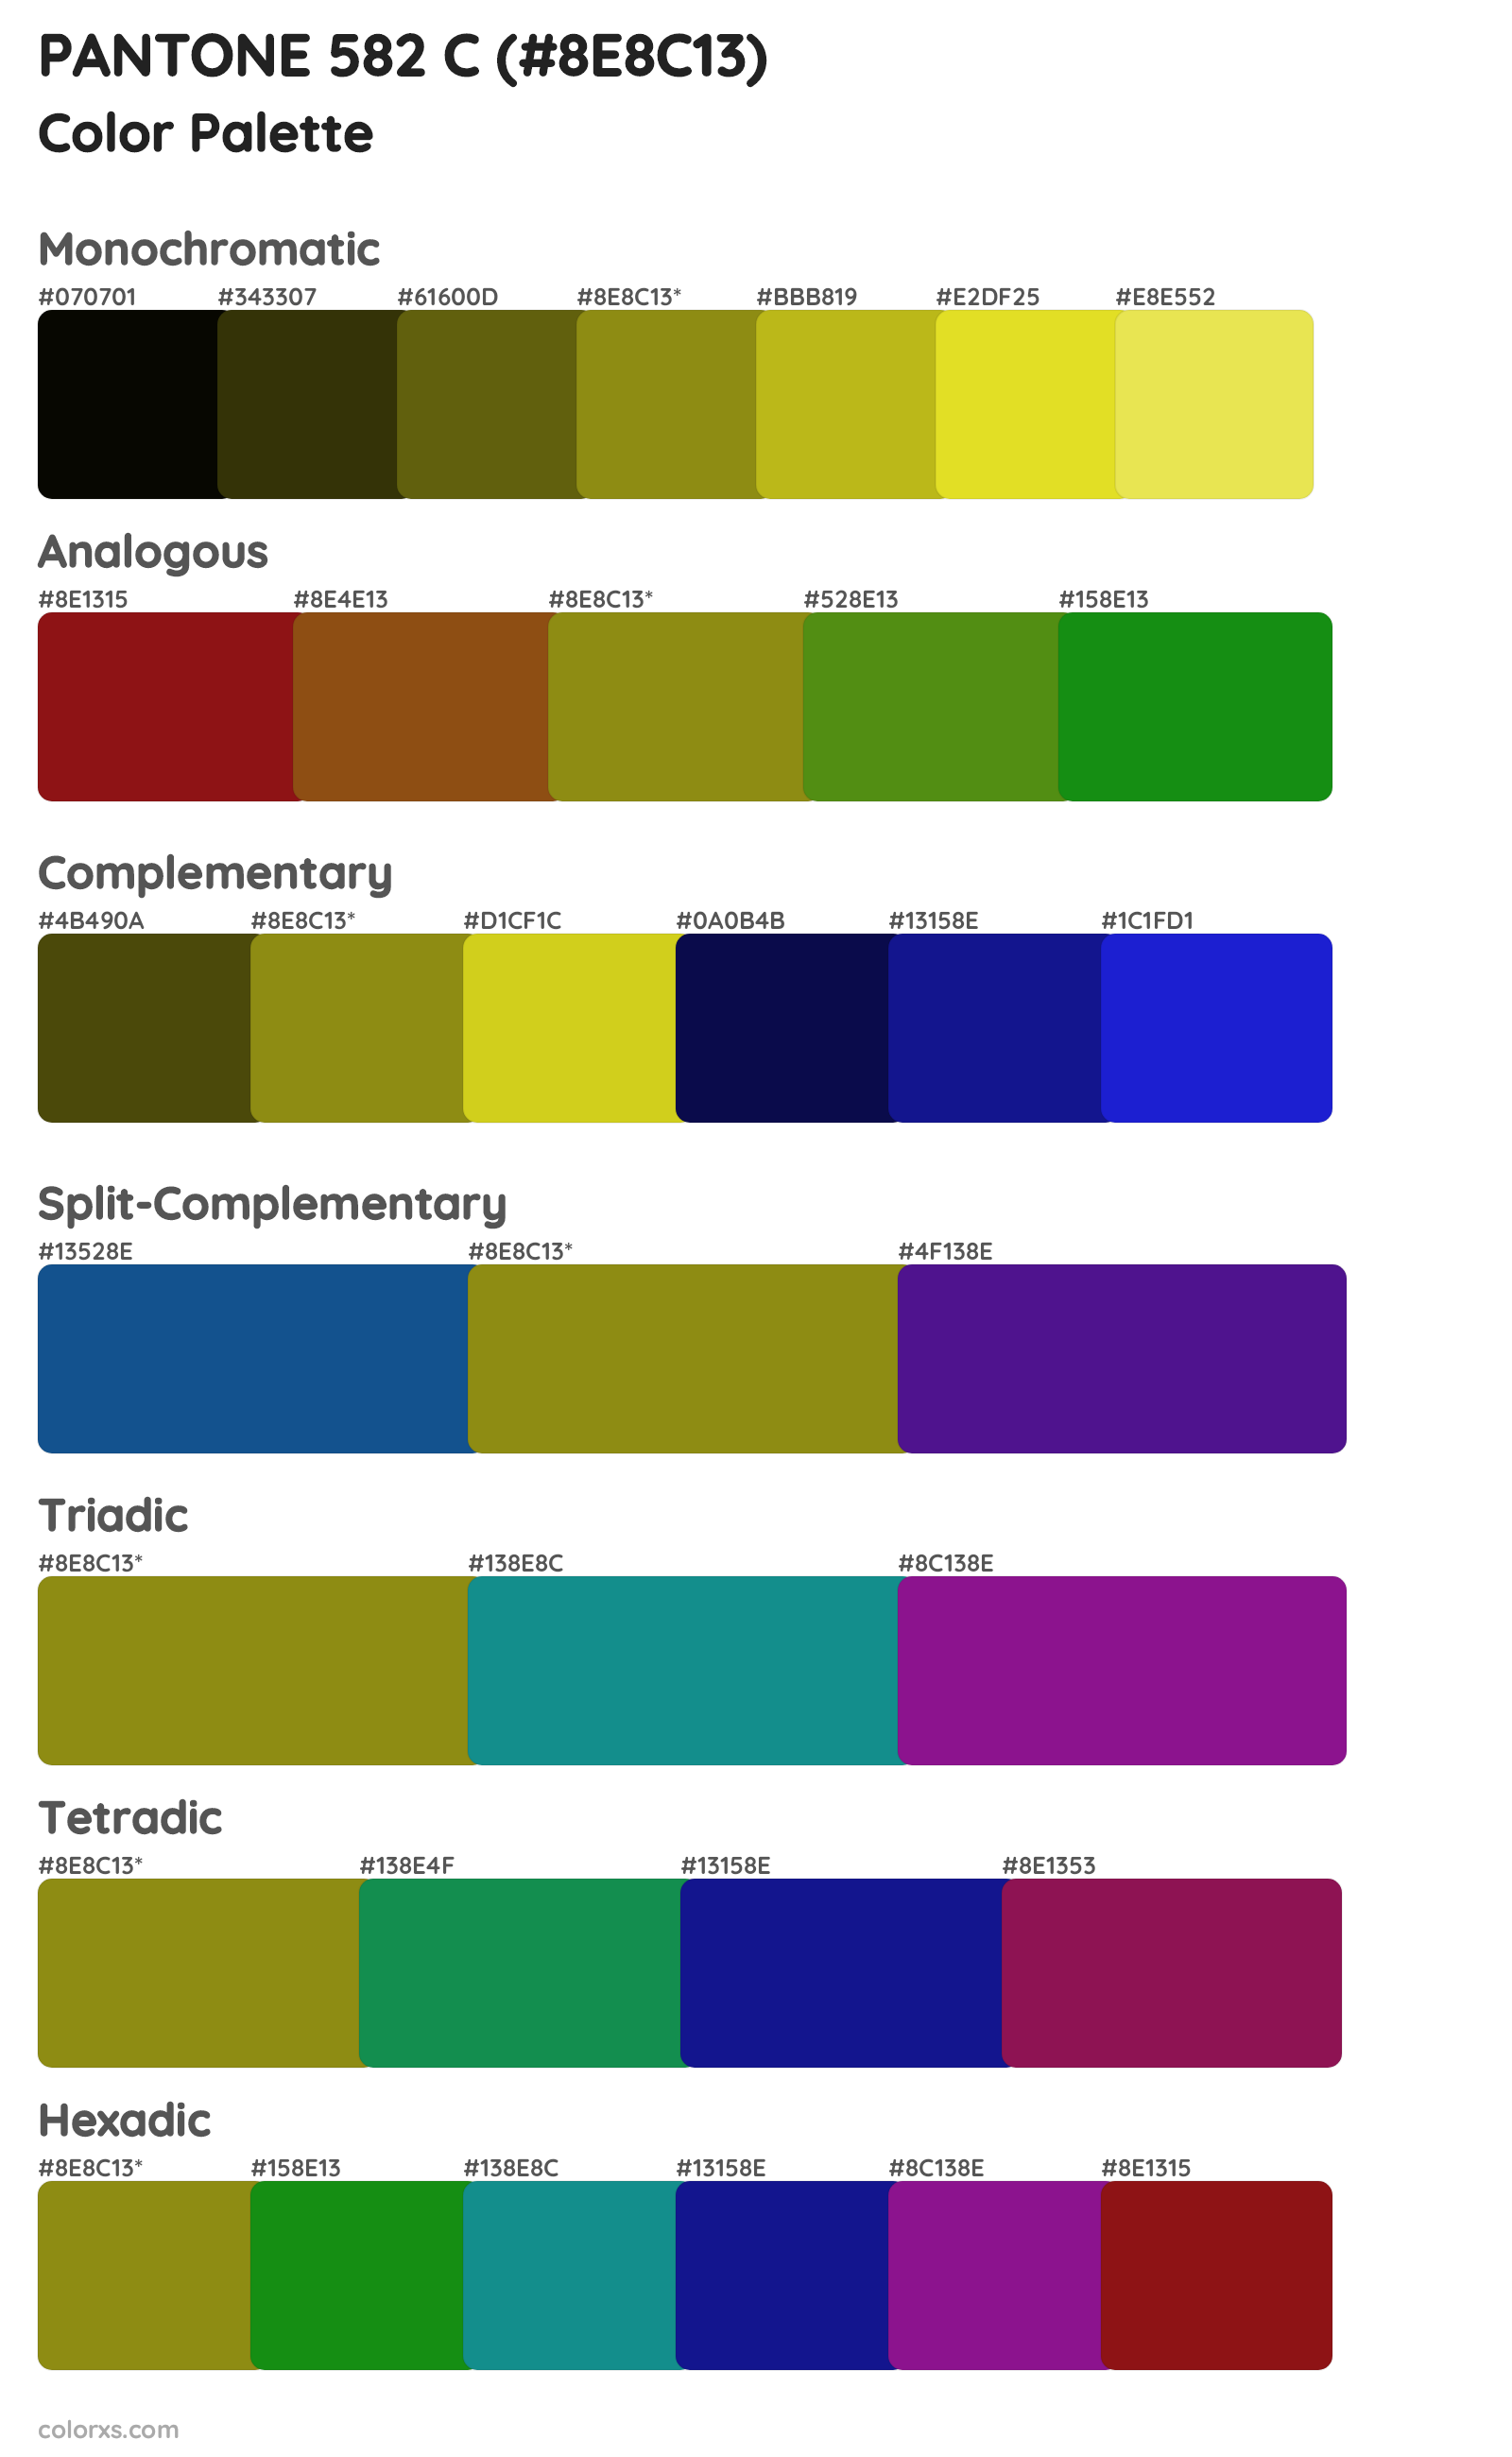 PANTONE 582 C Color Scheme Palettes